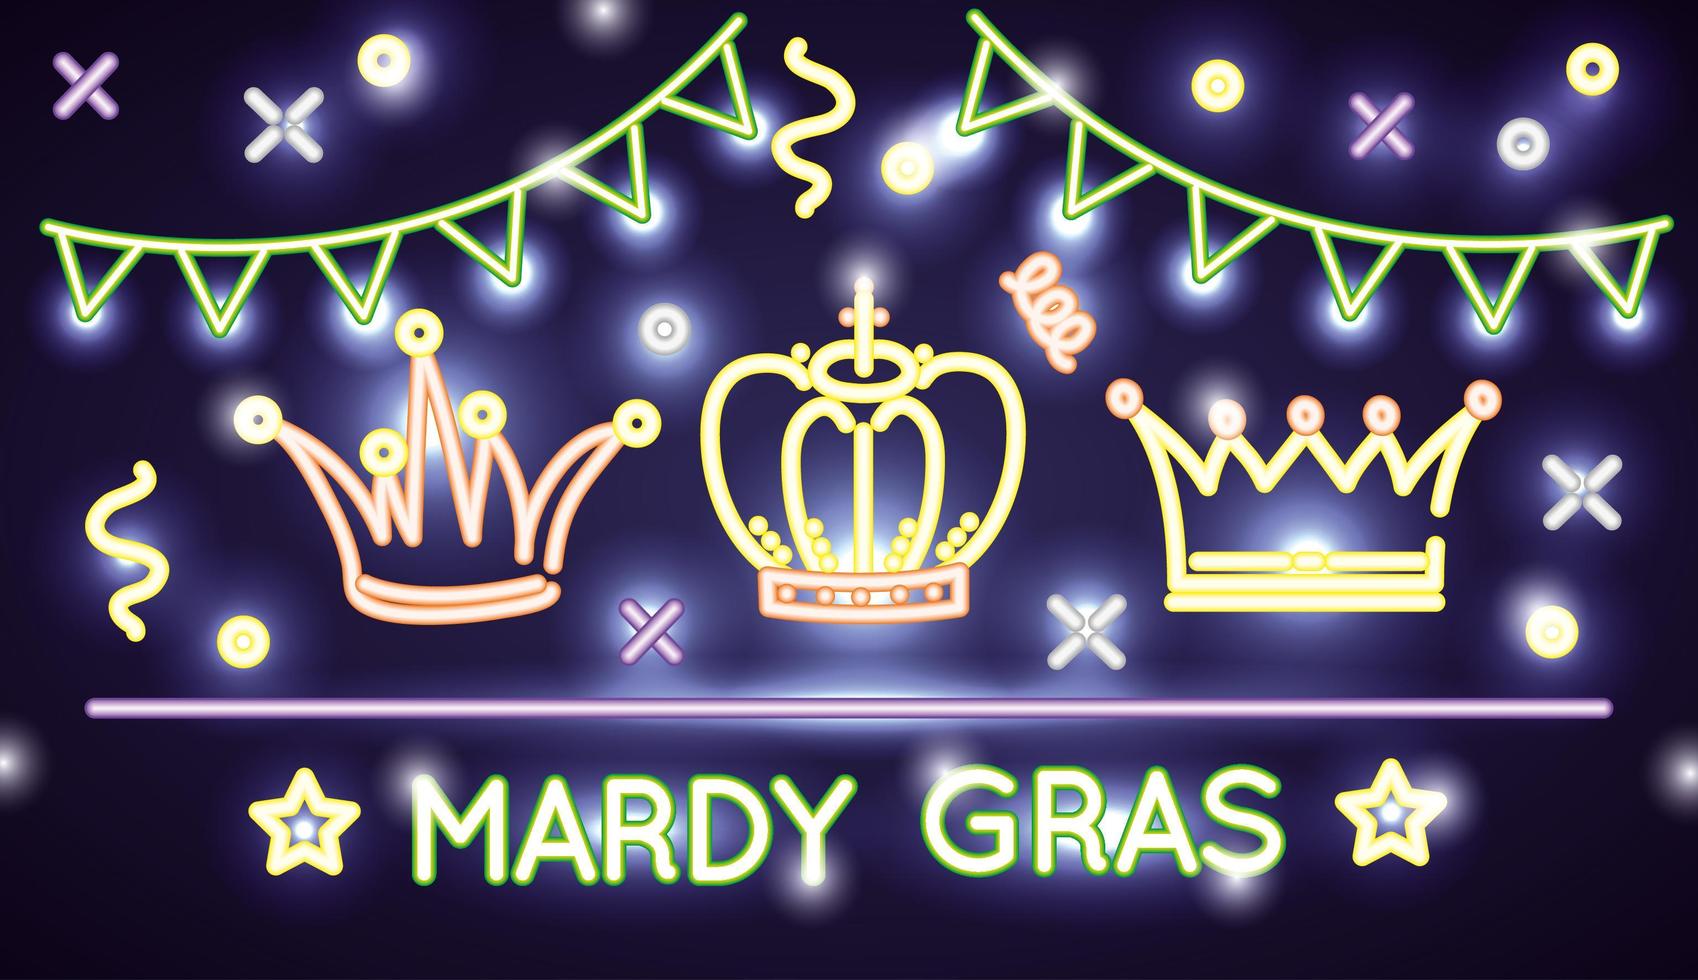 mardi gras viering banner met neonlichten vector